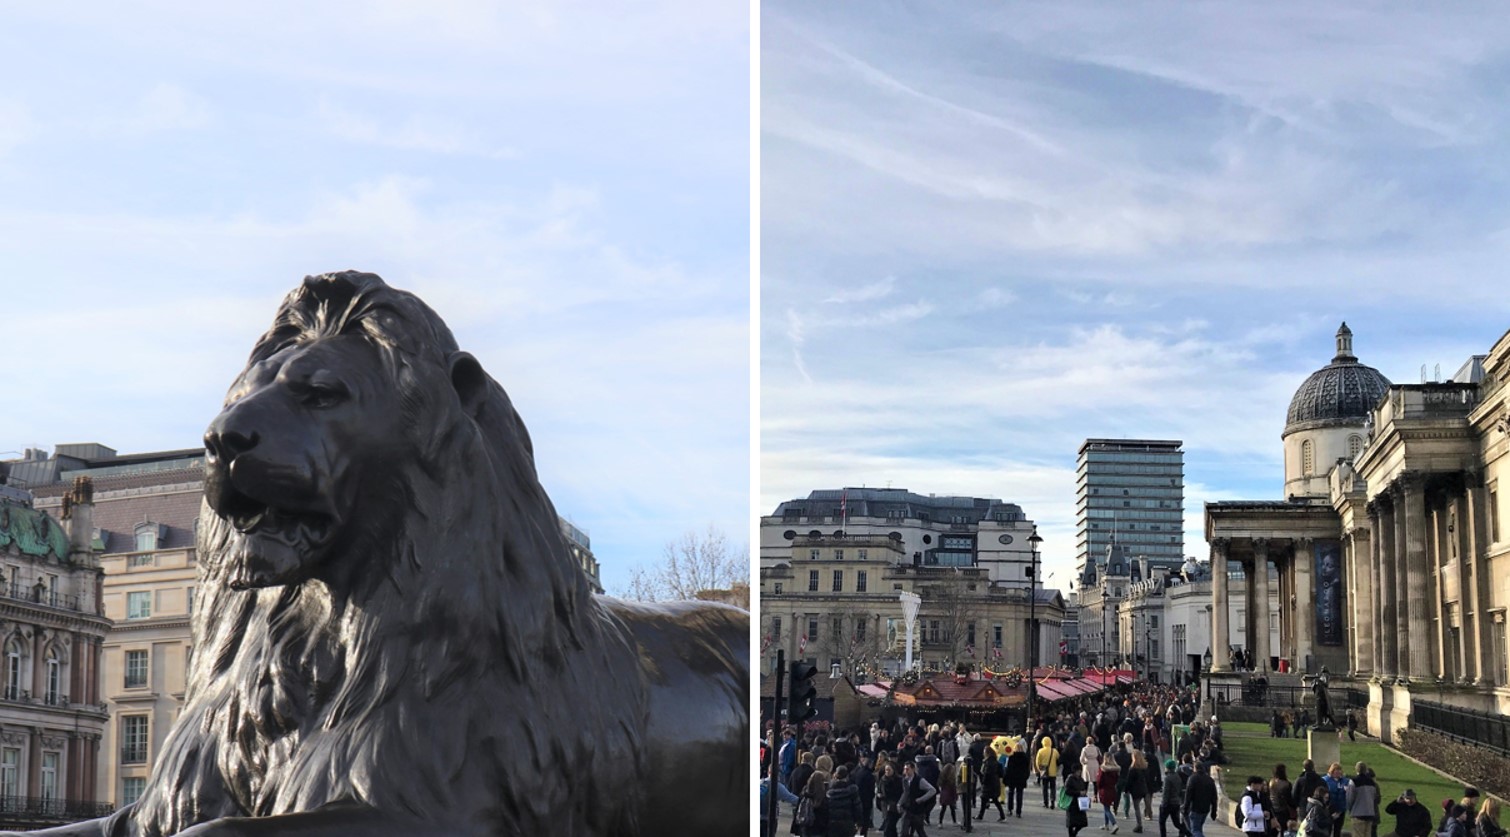 ナショナル・ギャラリーに面したトラファルガー広場には、噴水や４頭の大きなライオンの像がある